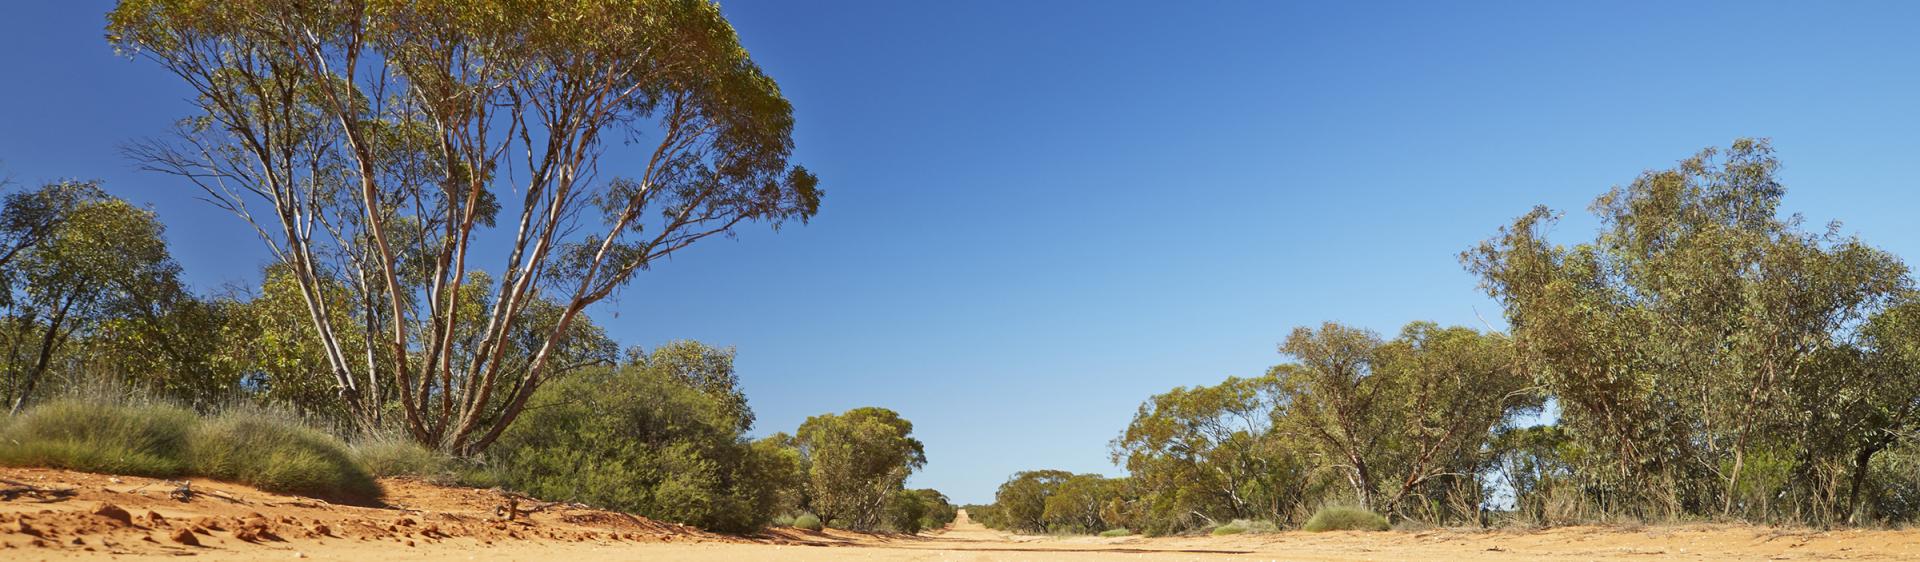 멍고 국립공원 트랙, 브로큰 힐(Broken Hill)